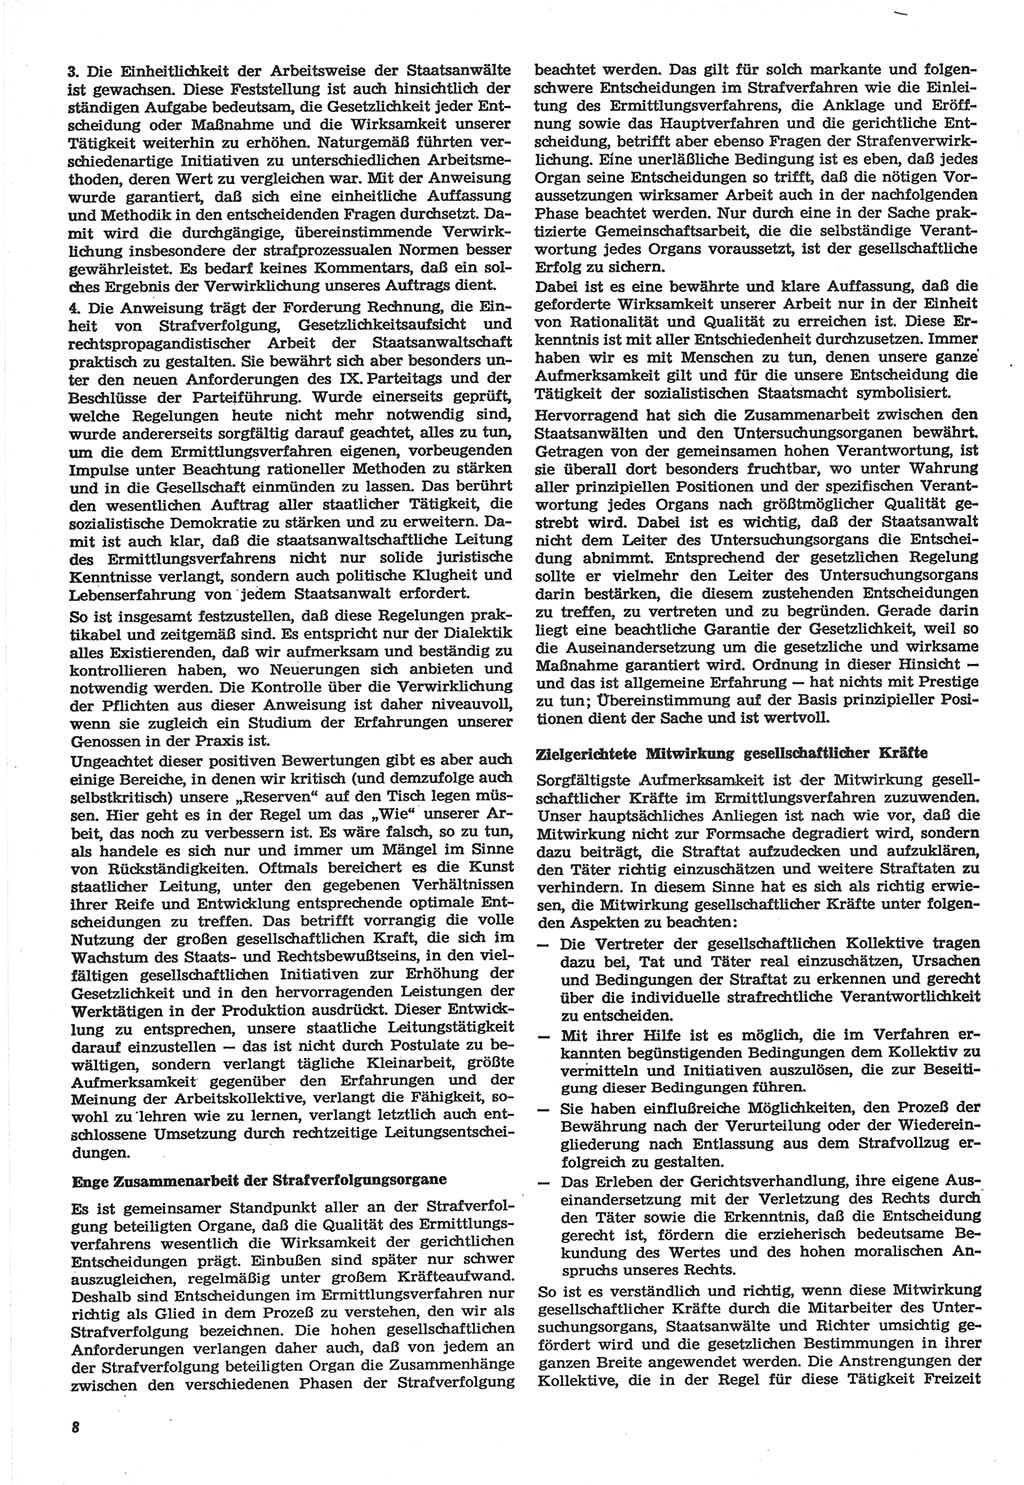 Neue Justiz (NJ), Zeitschrift für Recht und Rechtswissenschaft-Zeitschrift, sozialistisches Recht und Gesetzlichkeit, 31. Jahrgang 1977, Seite 8 (NJ DDR 1977, S. 8)